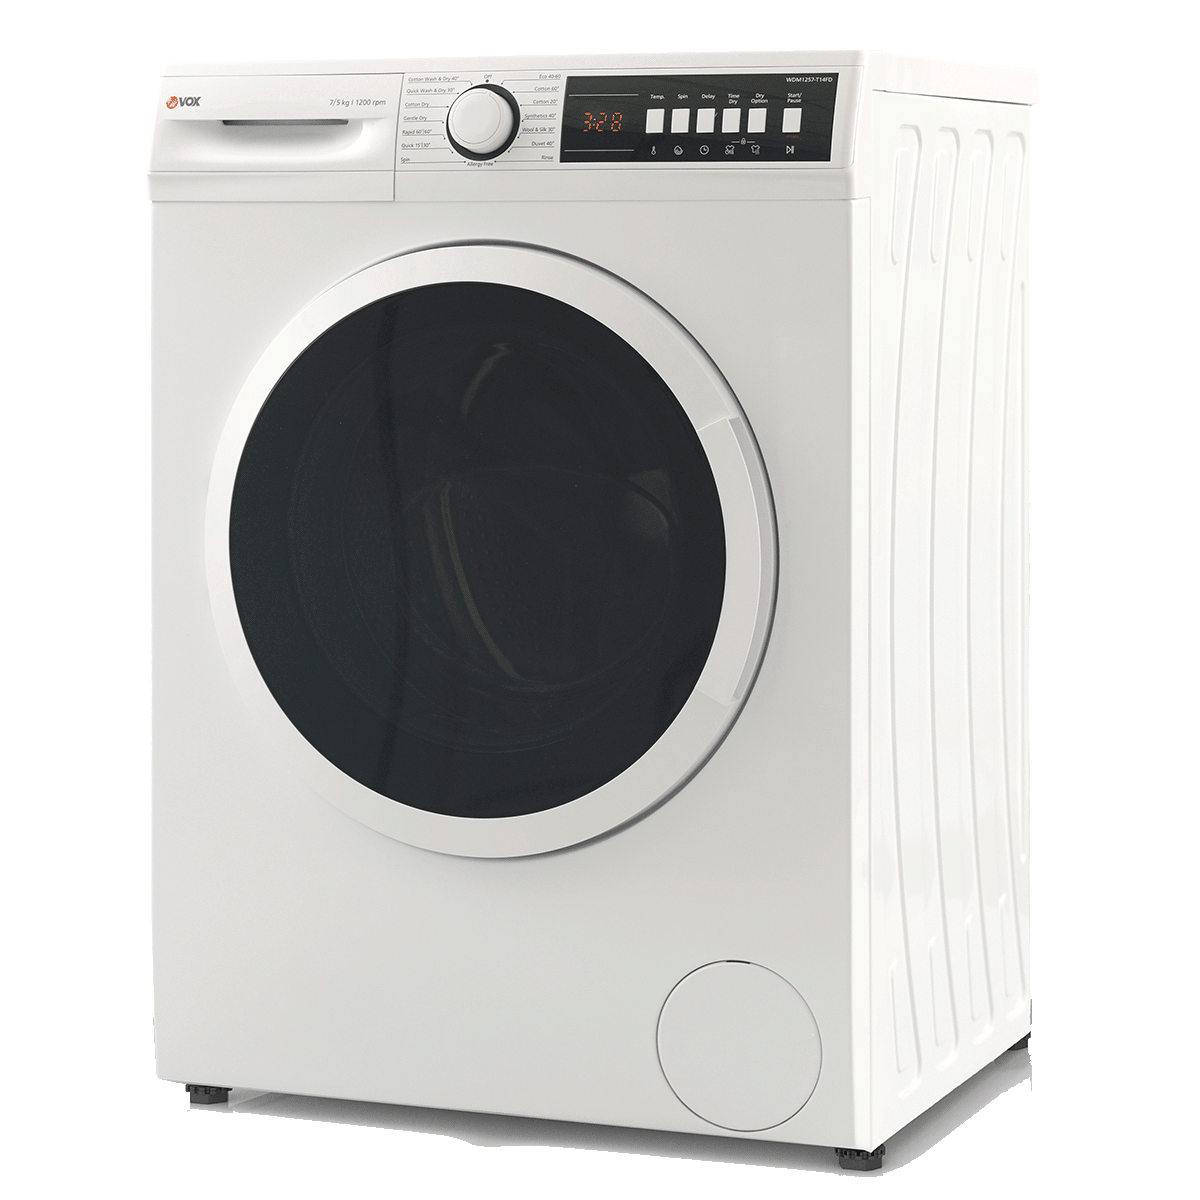 Mašina za pranje i sušenje veša WDM1257-T14FD 